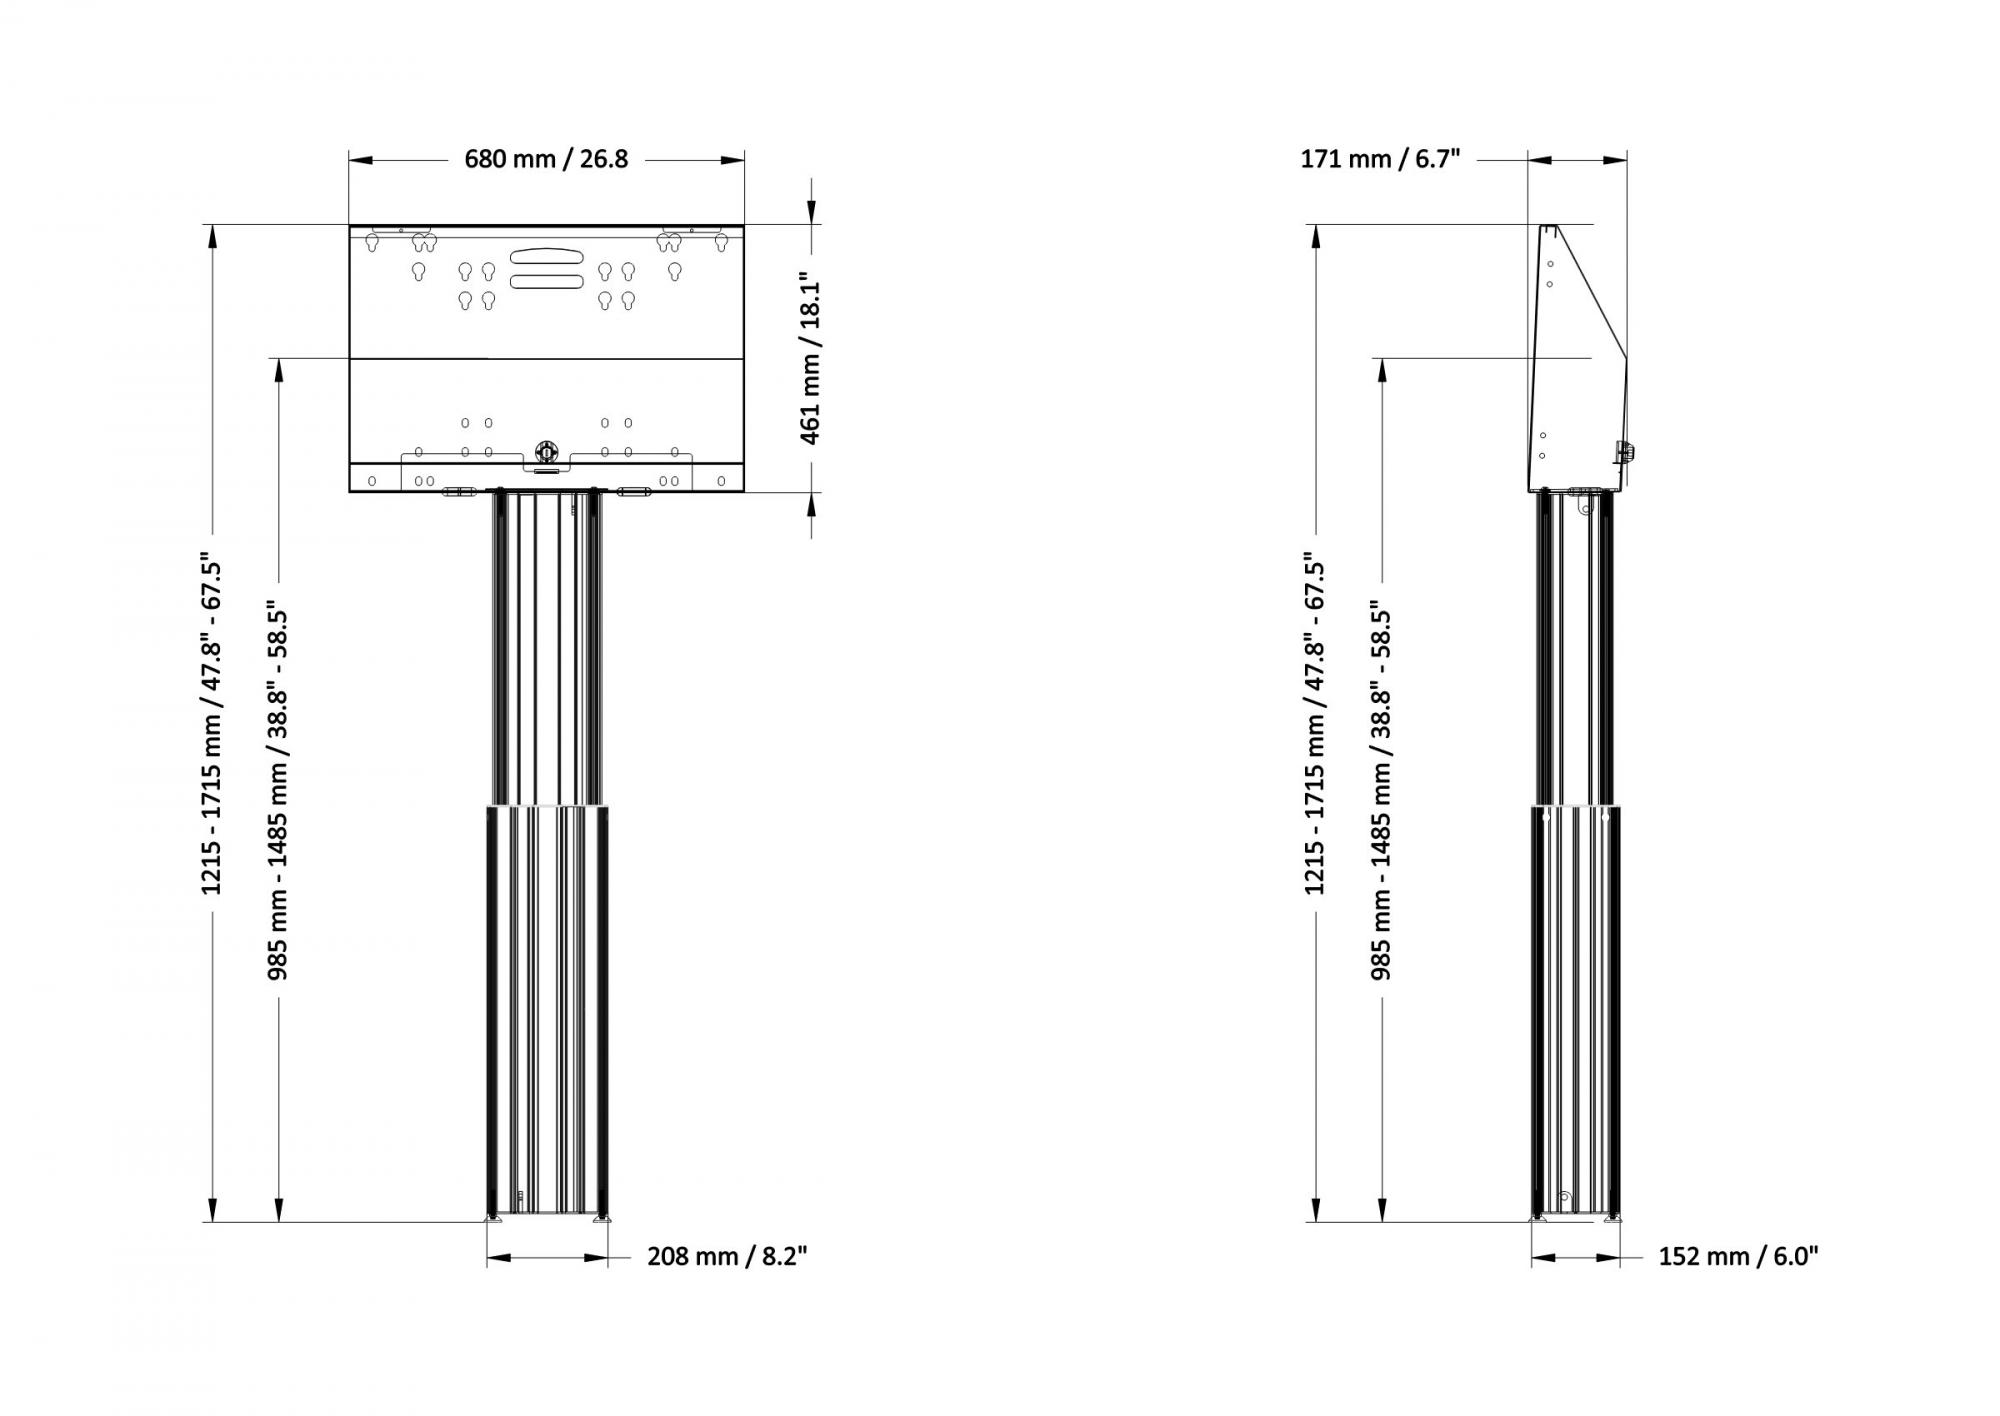 Elektrisch hoogte verstelbaar TV standaard 95-145 cm voor 42 tot 70 inch schermen voor wandmontage